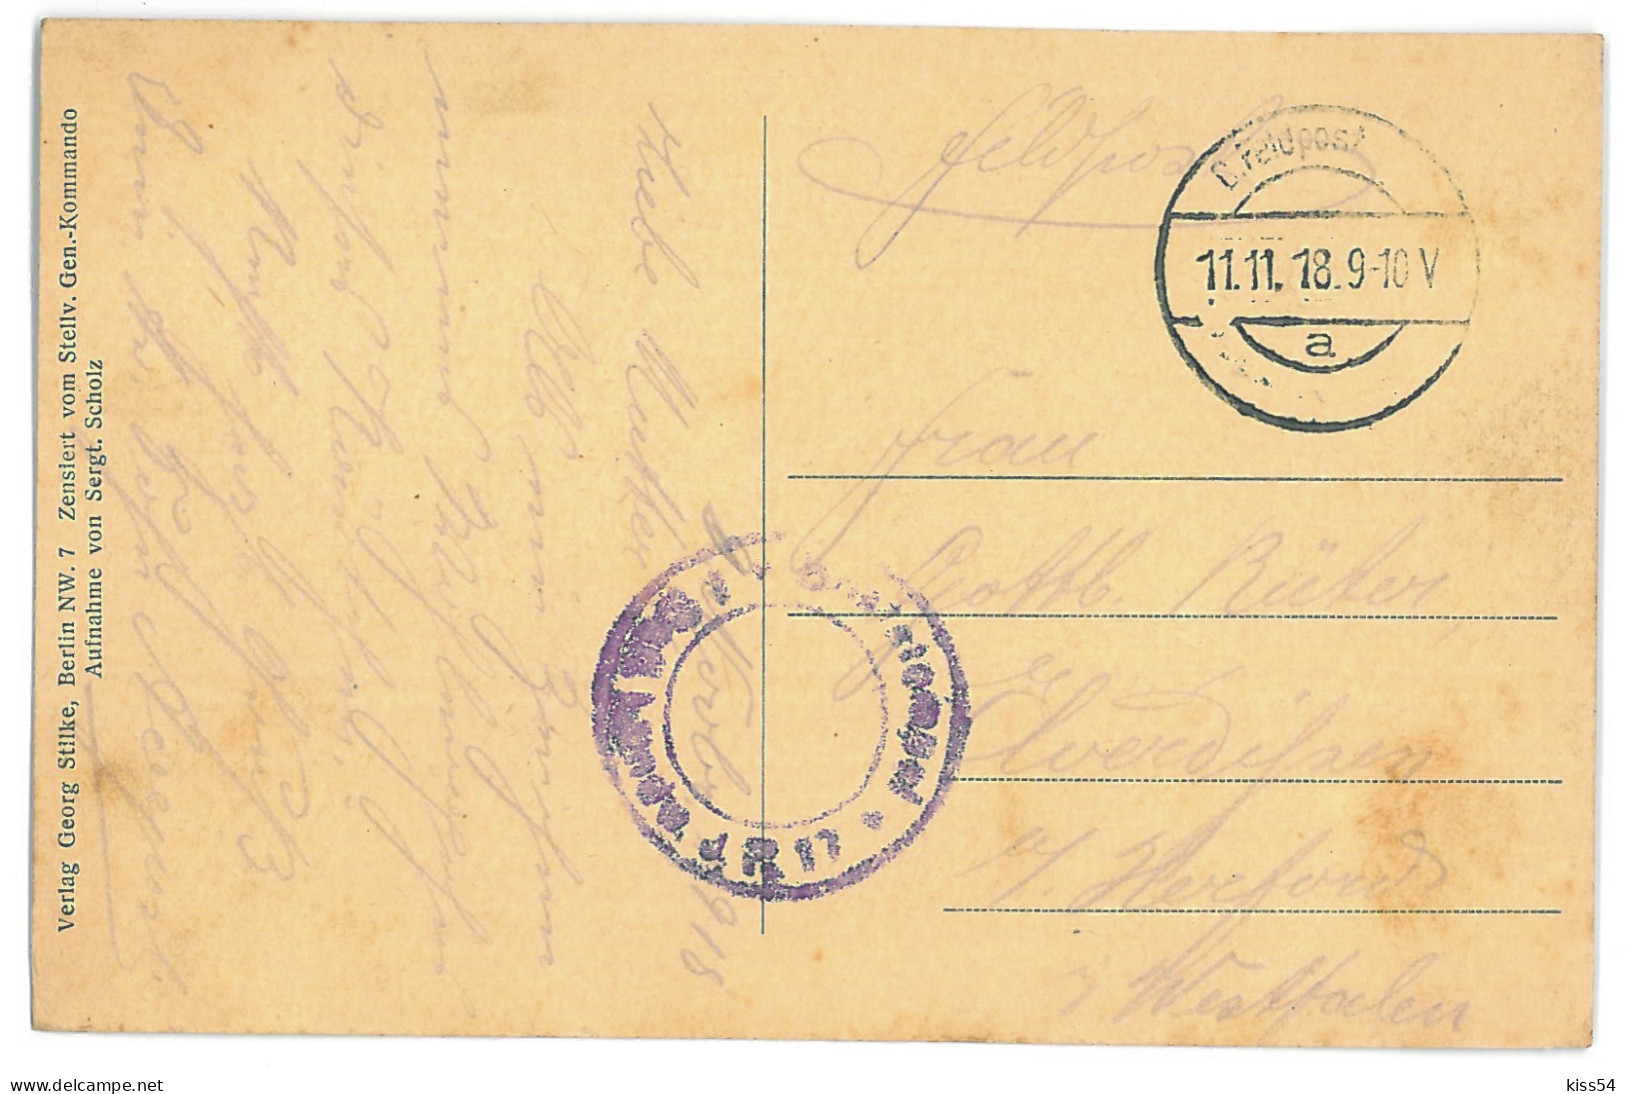 BL 23 - 12972 POLATSK, Belarus, Ship - Old Postcard, CENSOR - Used - 1918 - Belarus